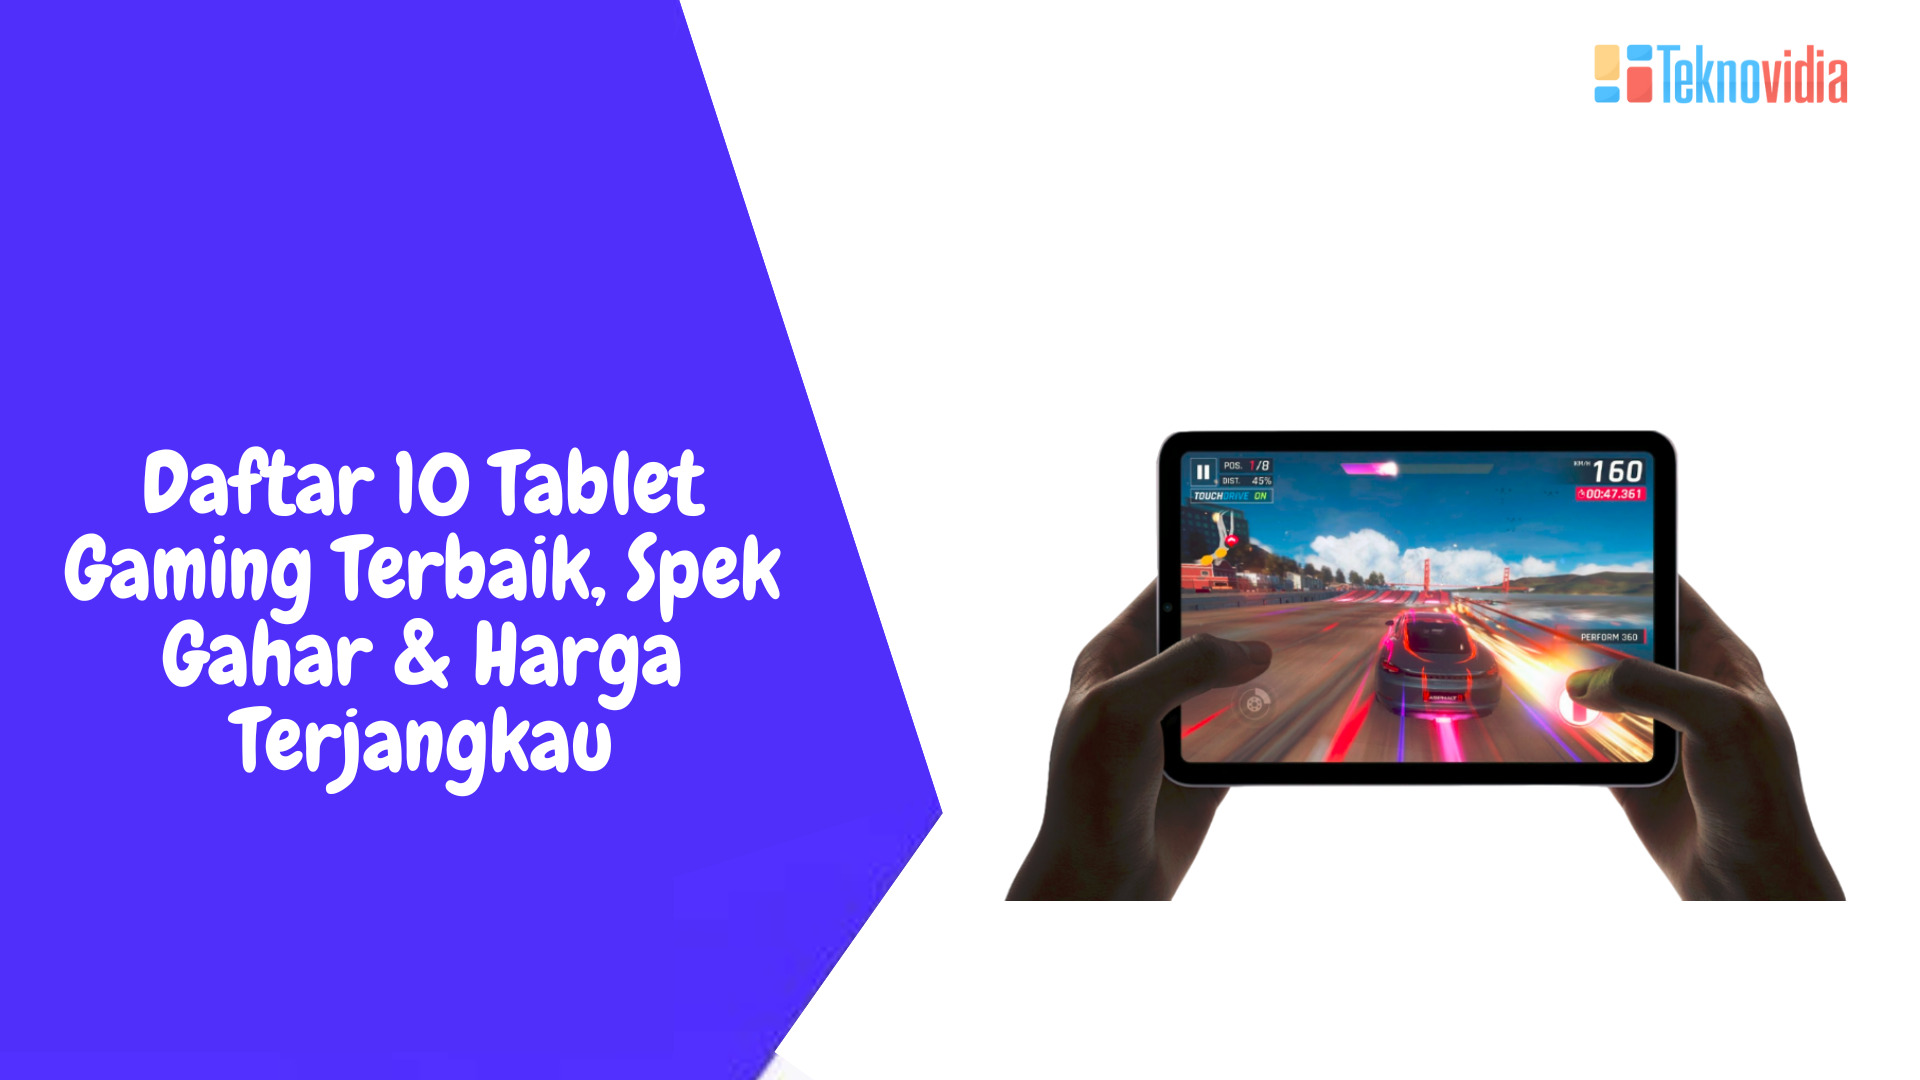 Daftar 10 Tablet Gaming Terbaik, Spek Gahar & Harga Terjangkau